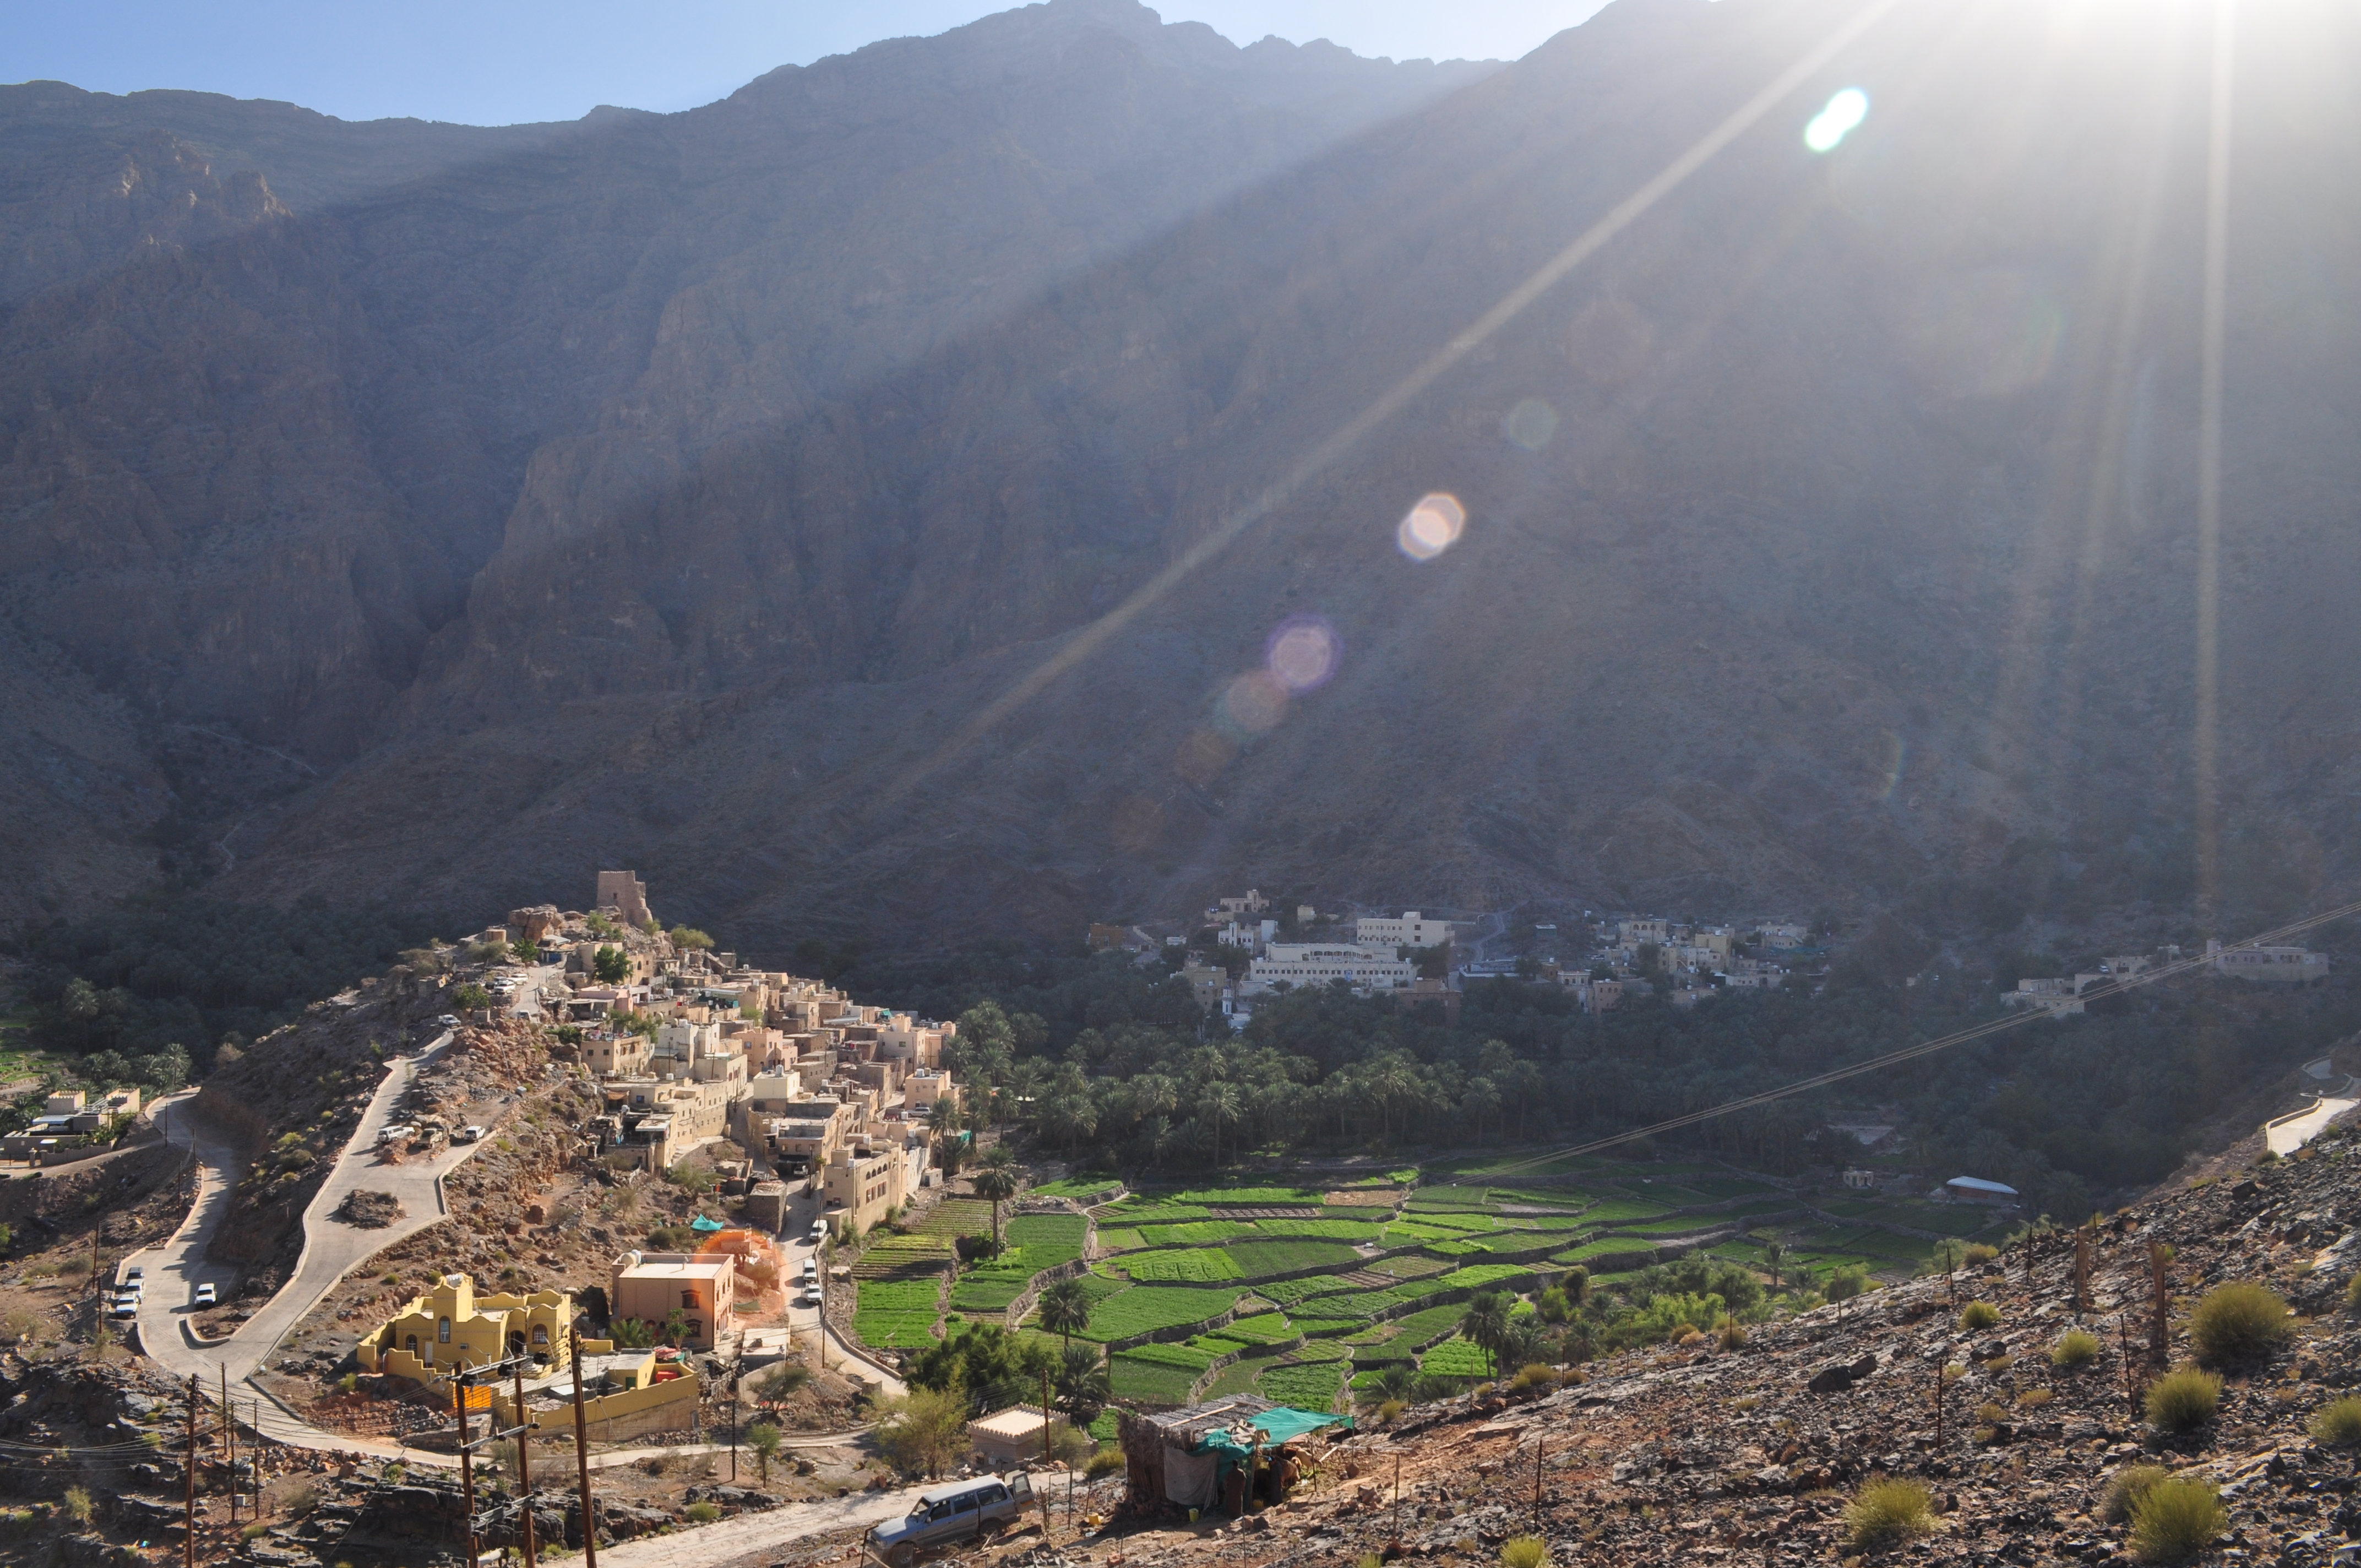 Oman Tourism: Visit Bilad Sayt, Oman's most picturesque village